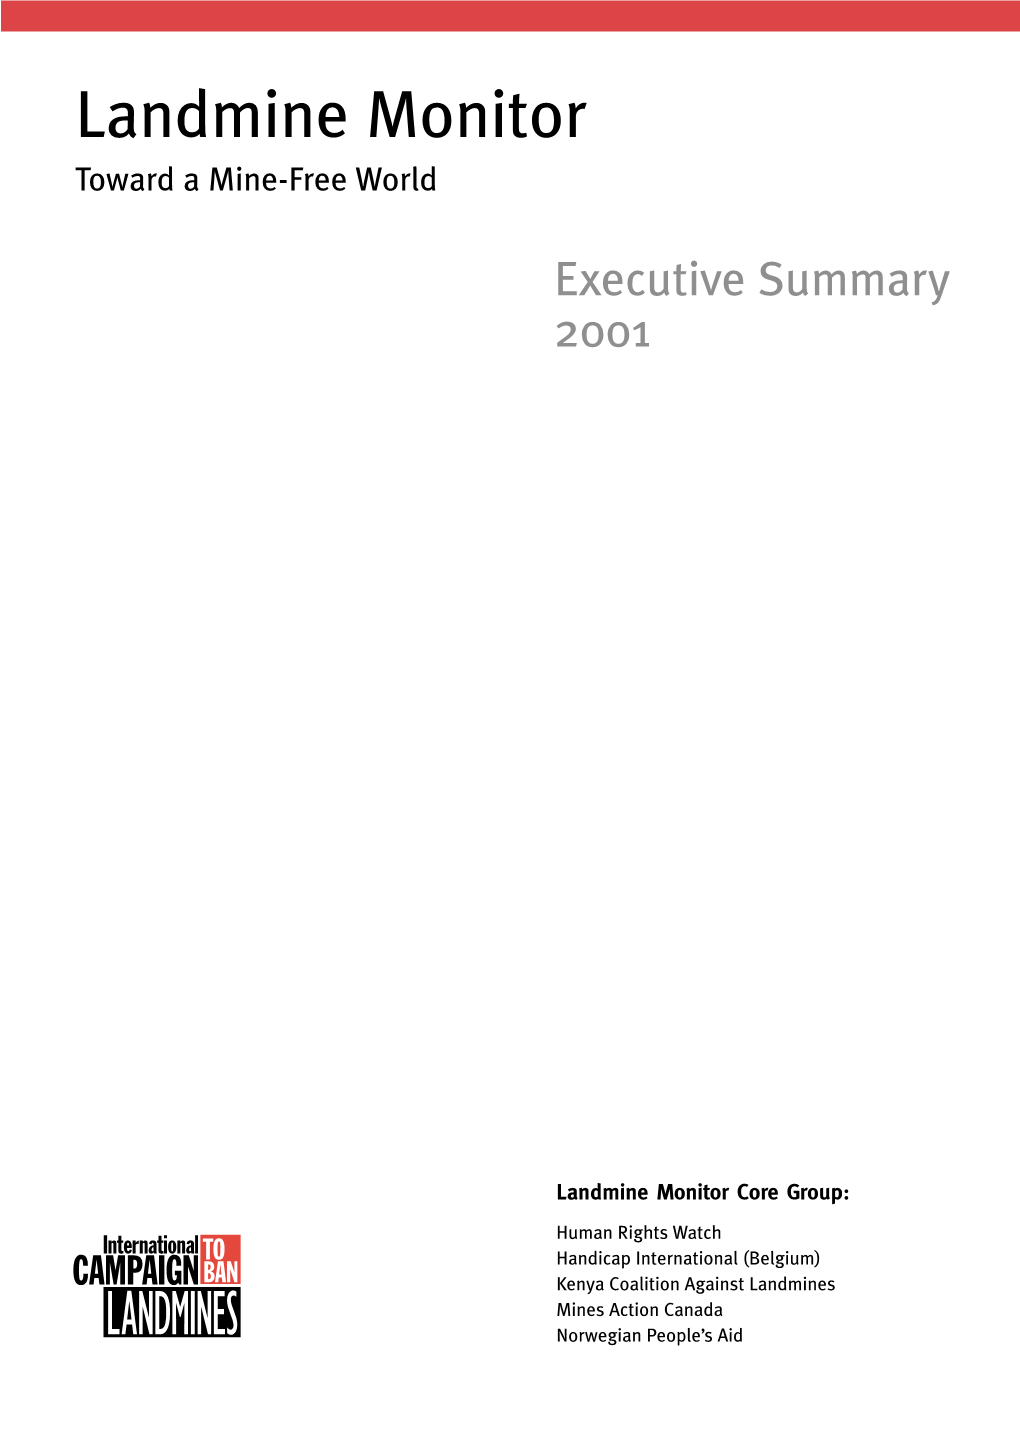 Executive Summary 2001